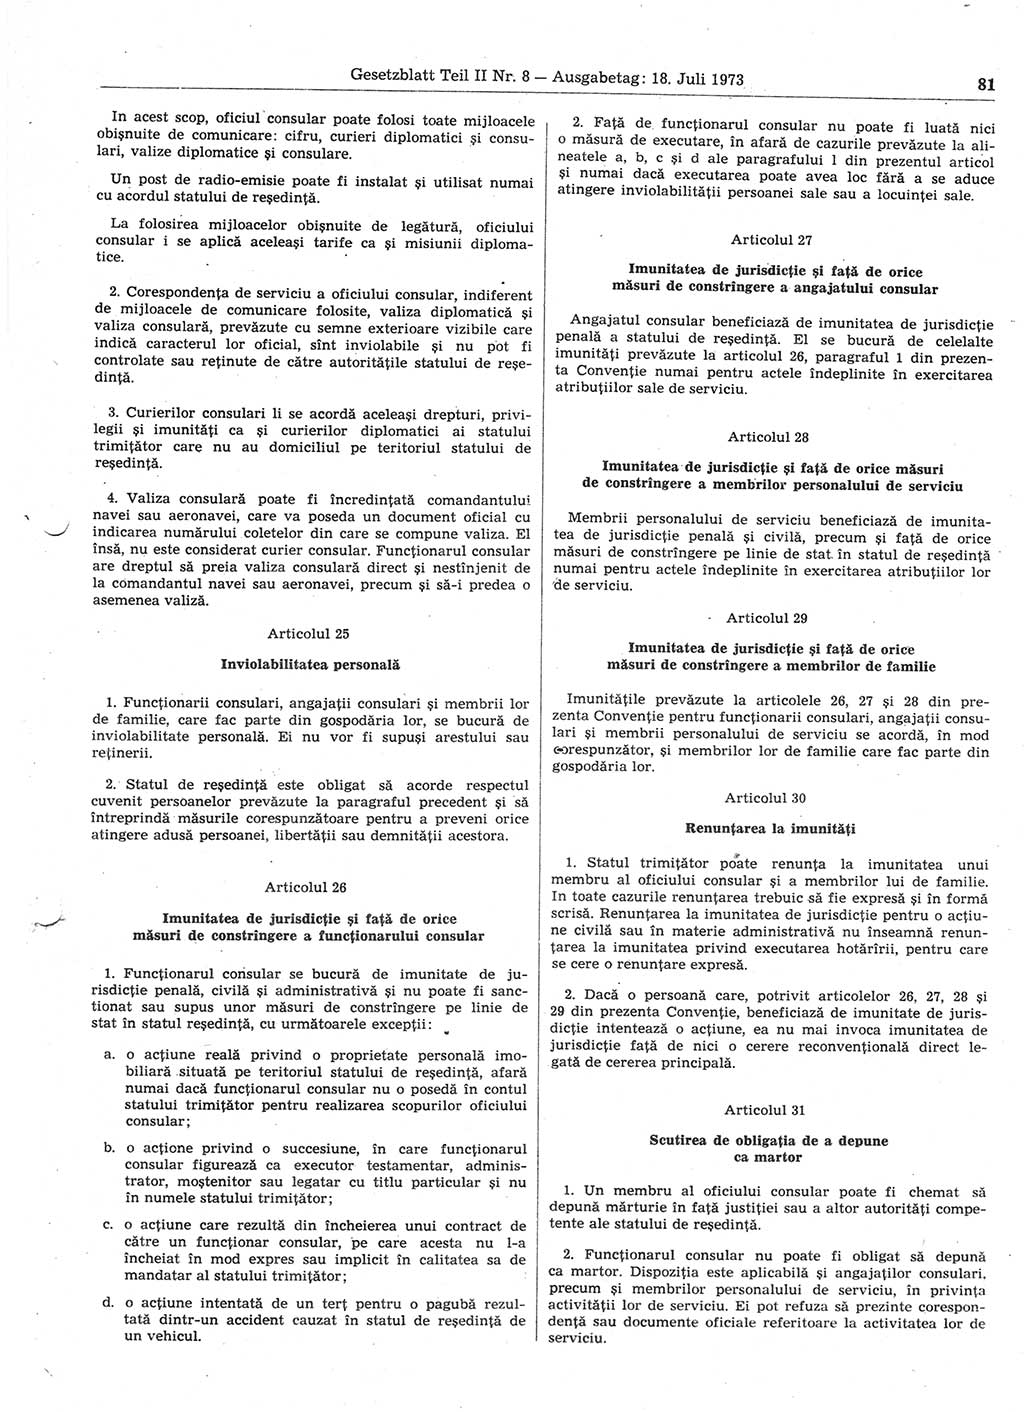 Gesetzblatt (GBl.) der Deutschen Demokratischen Republik (DDR) Teil ⅠⅠ 1973, Seite 81 (GBl. DDR ⅠⅠ 1973, S. 81)